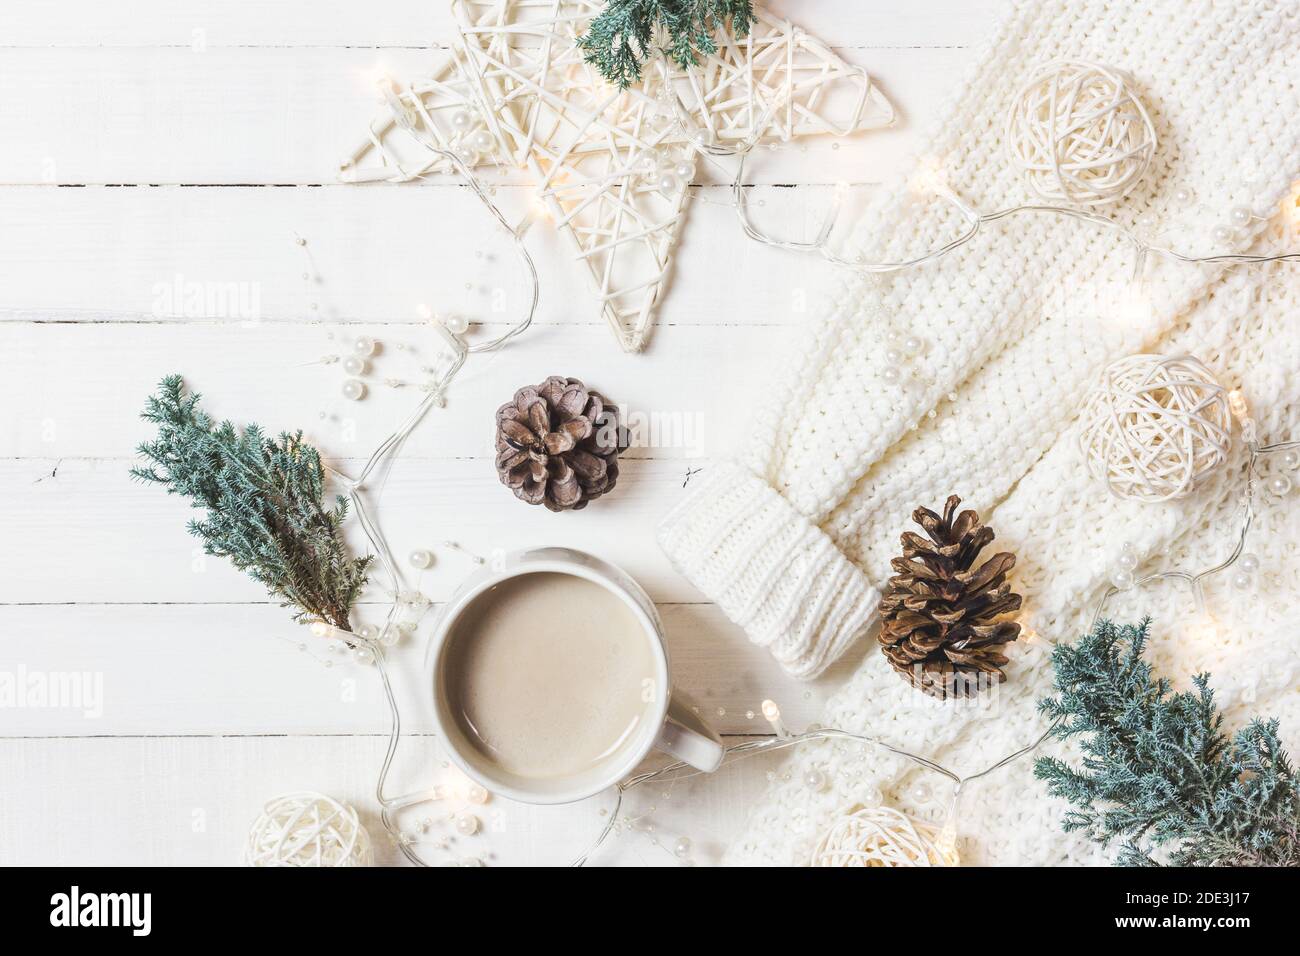 Composition de Noël. Tasse de café, chandail de mode pour femmes, branches de sapin et ornements sur fond blanc en bois. Hiver, concept de vacances. Pose à plat Banque D'Images